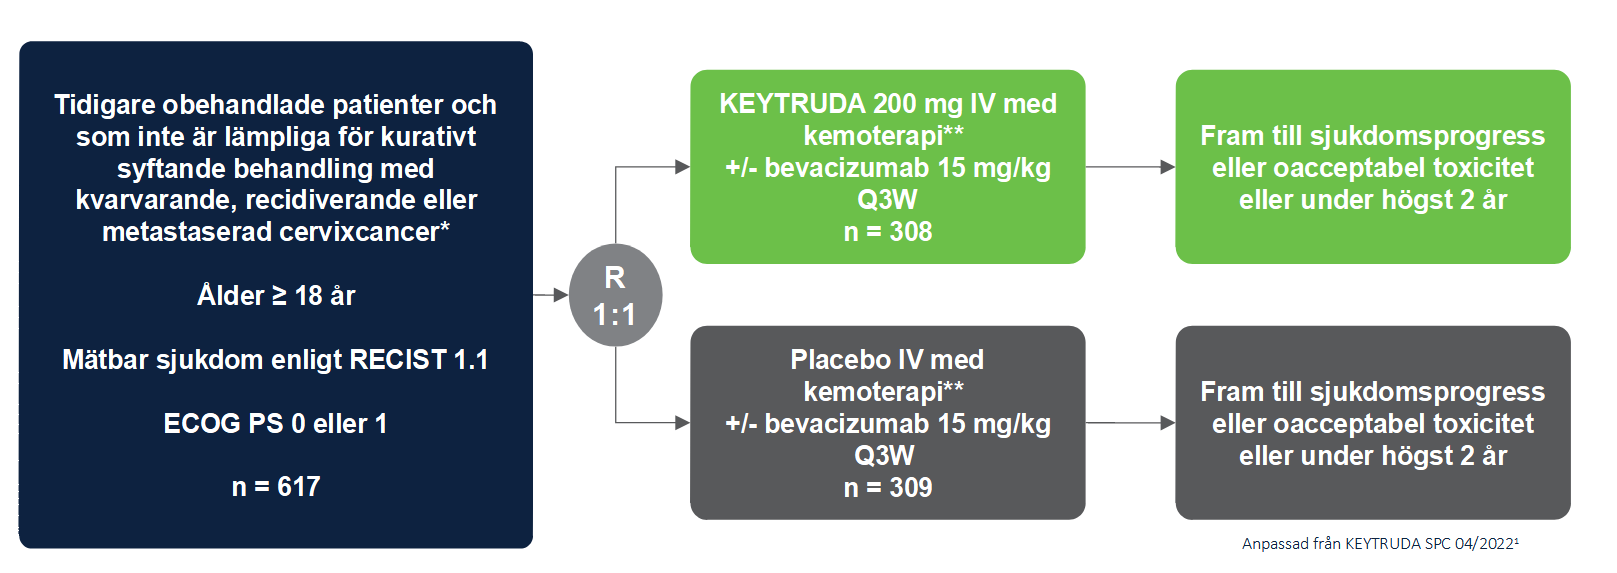 Keytruda - Indikation - Cervixcancer -Studiedesign - Keynote-826